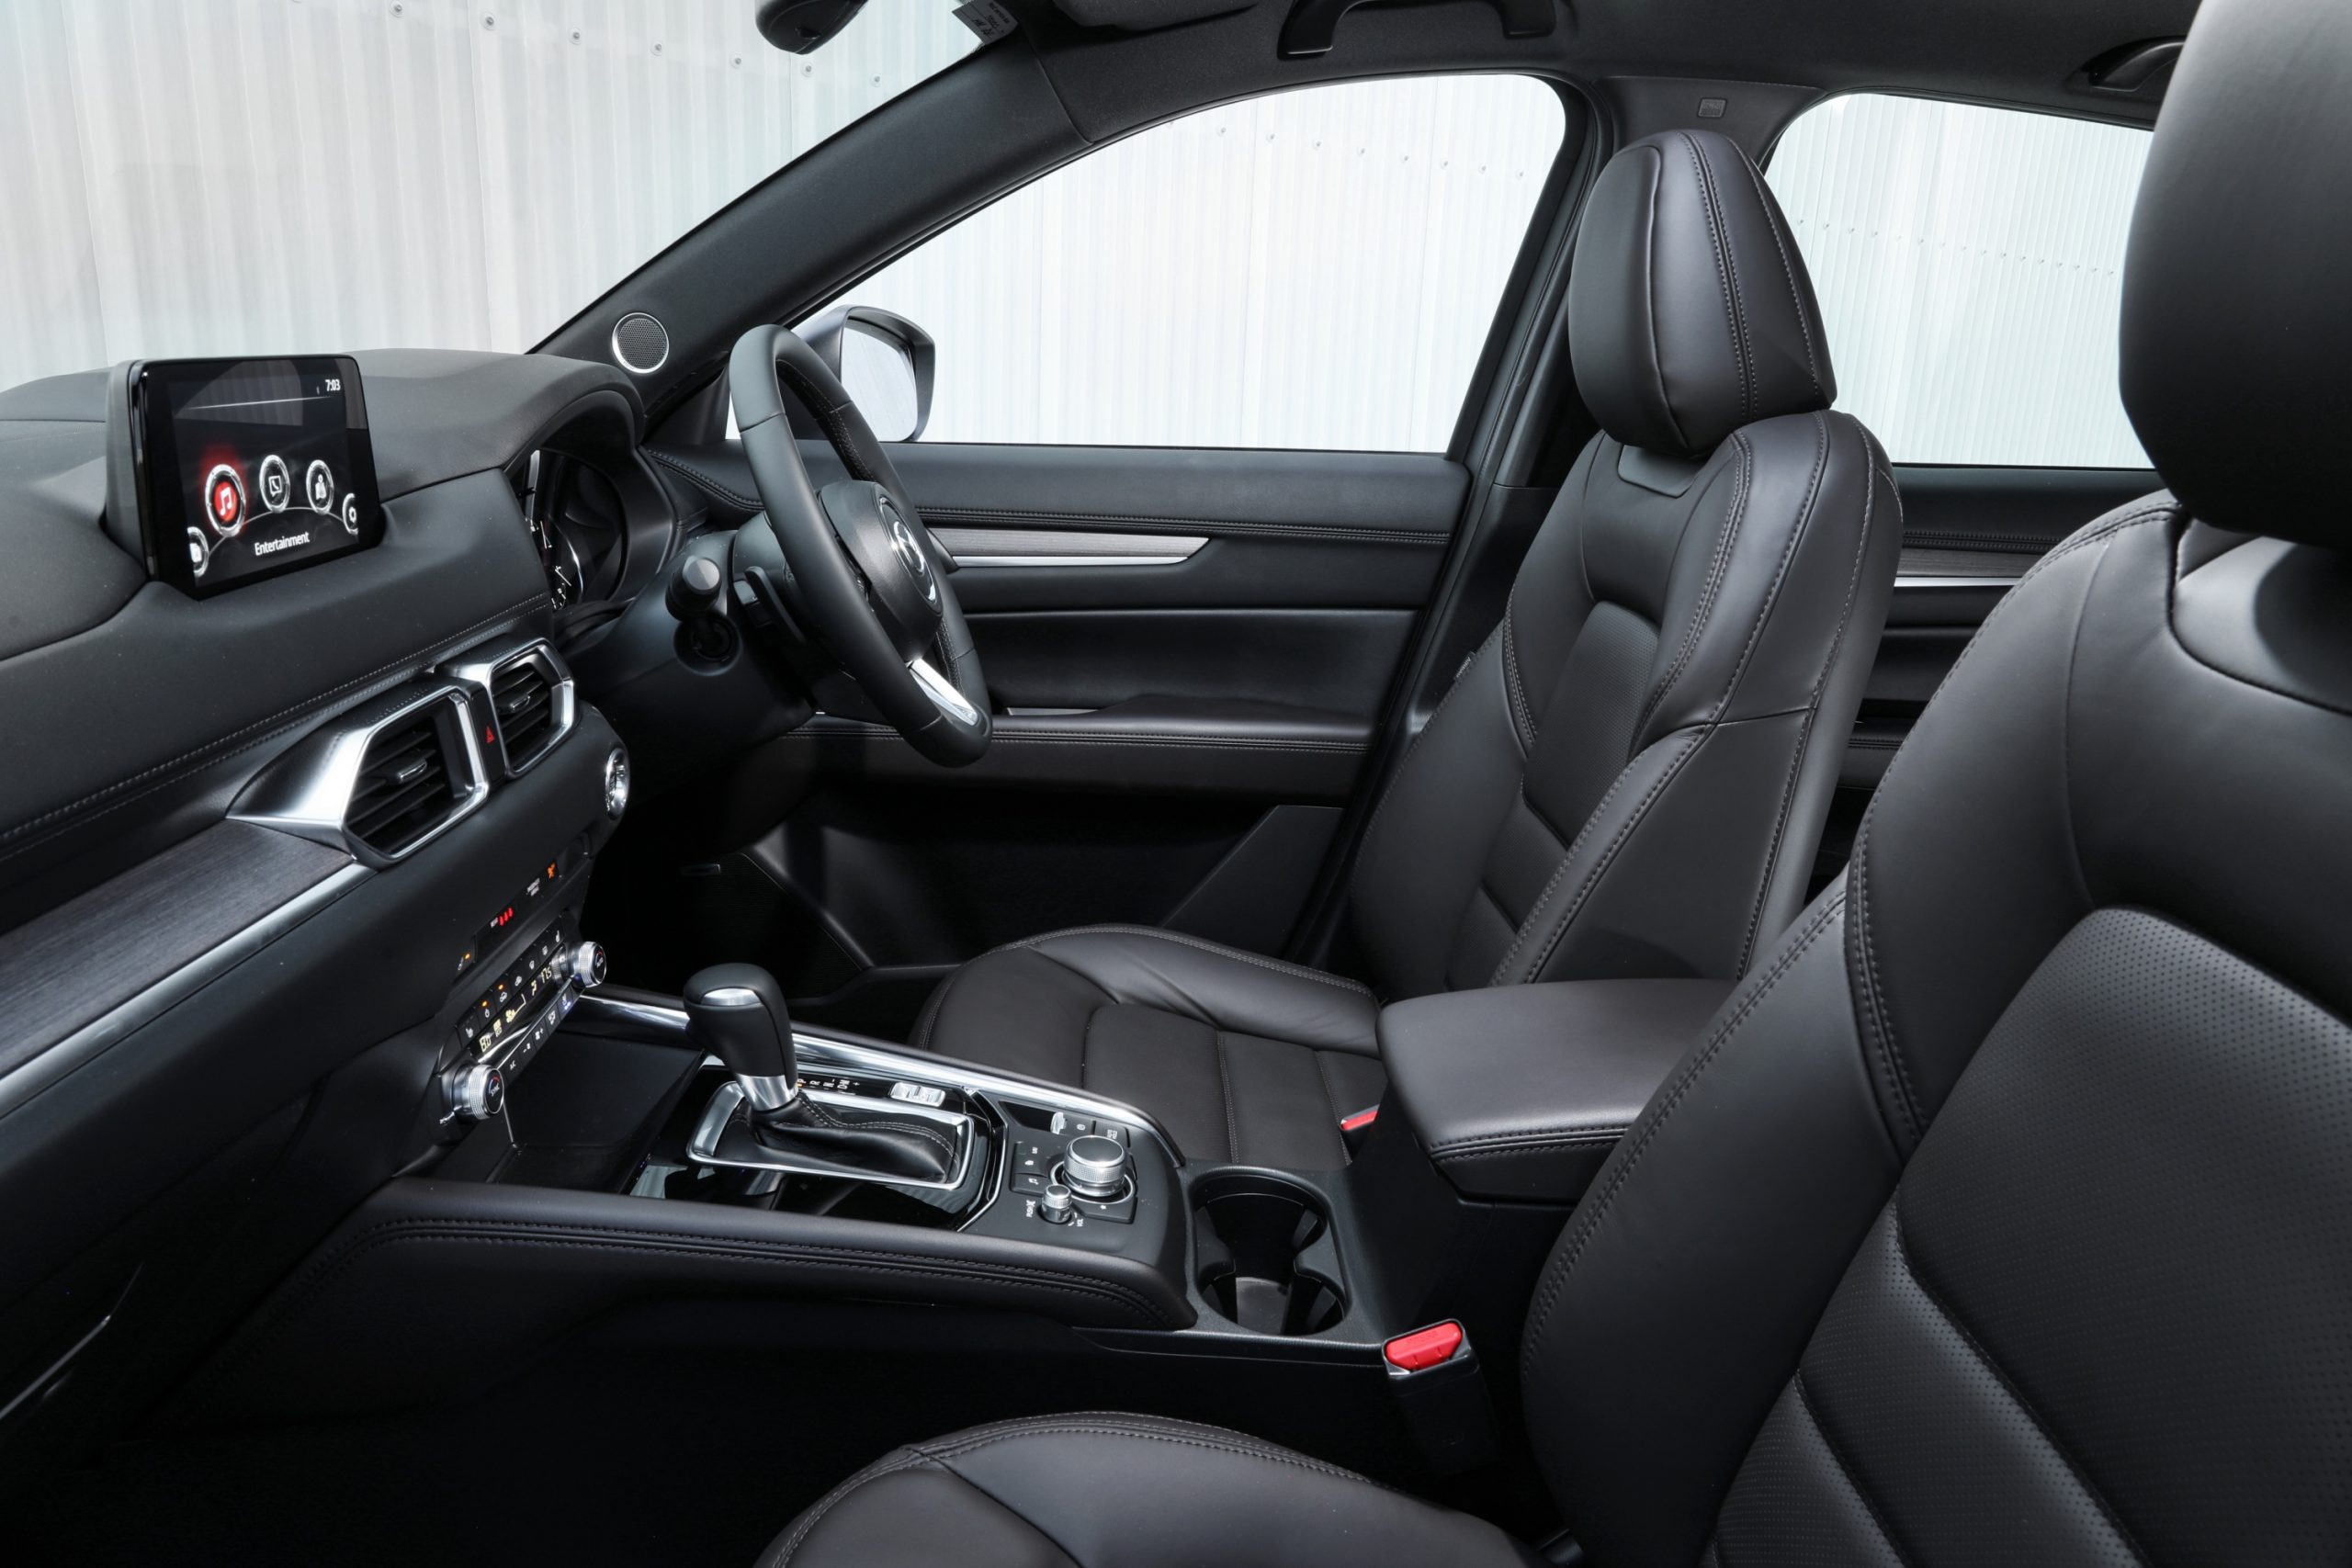 Mazda CX-5 Akera Turbo 2022 front interior